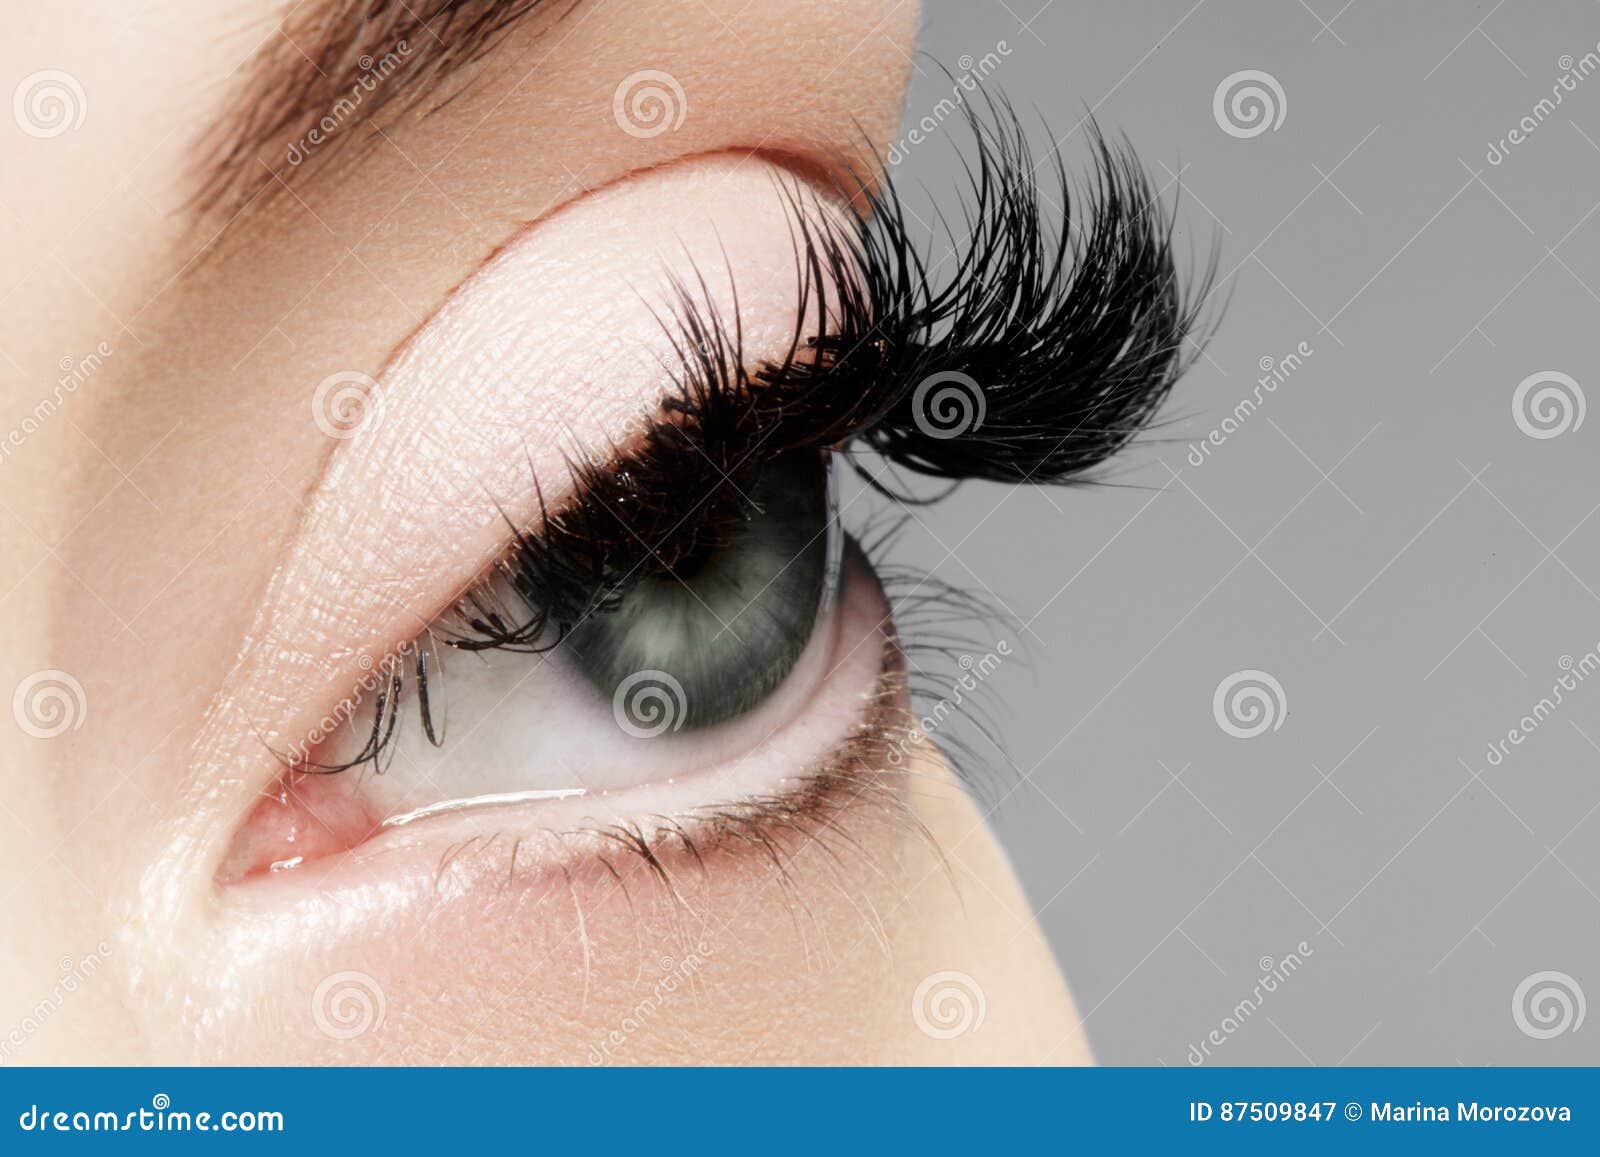 Beautiful Female Eye With Extreme Long Eyelashes Black Liner